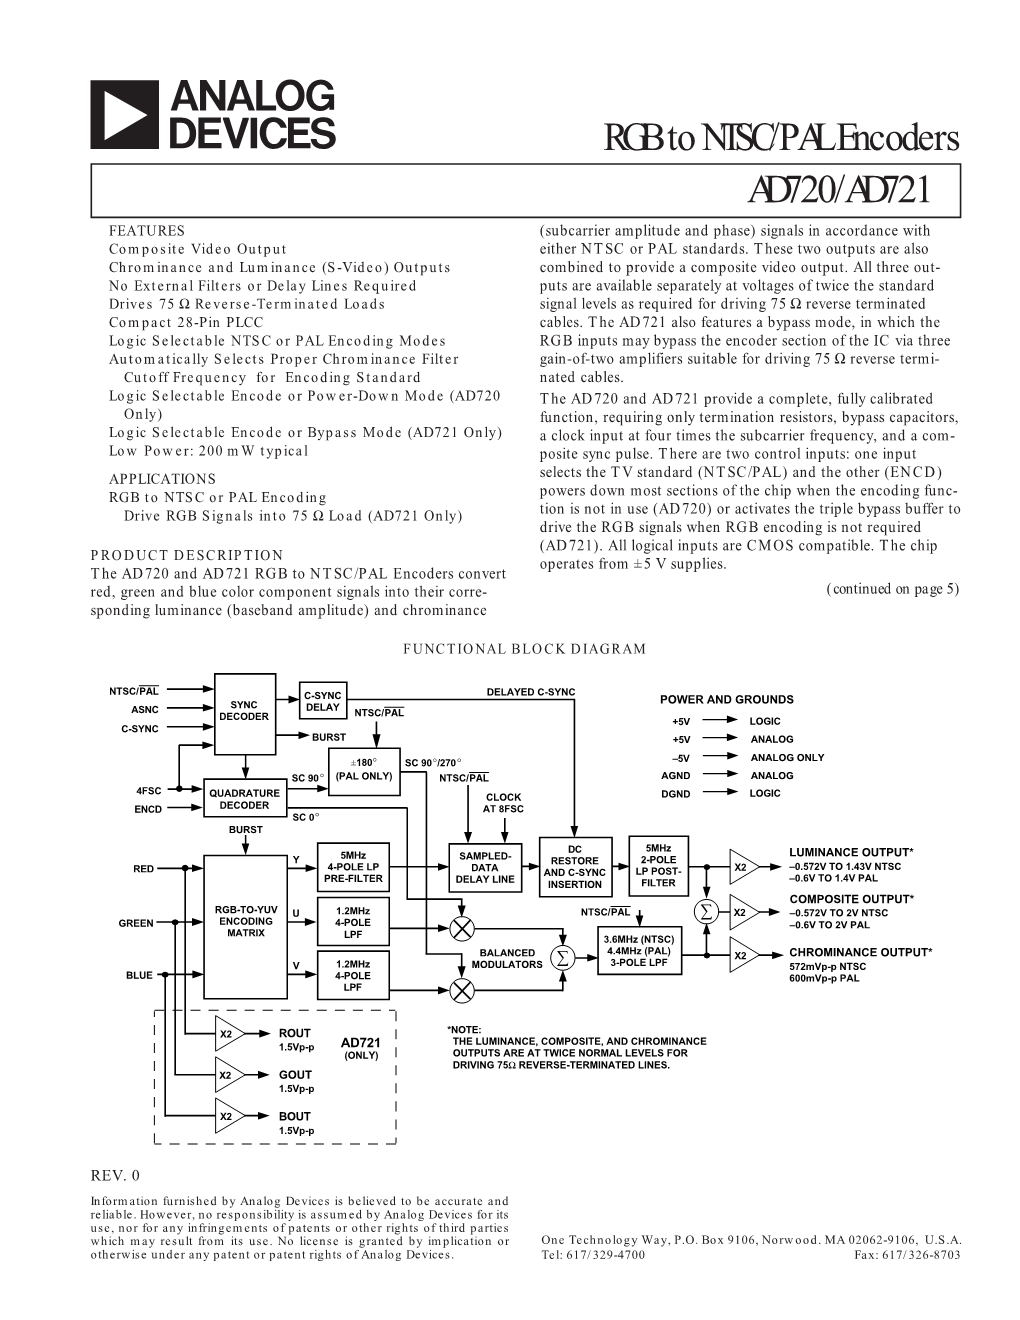 AD720/AD721 RGB to NTSC/PAL Encoders